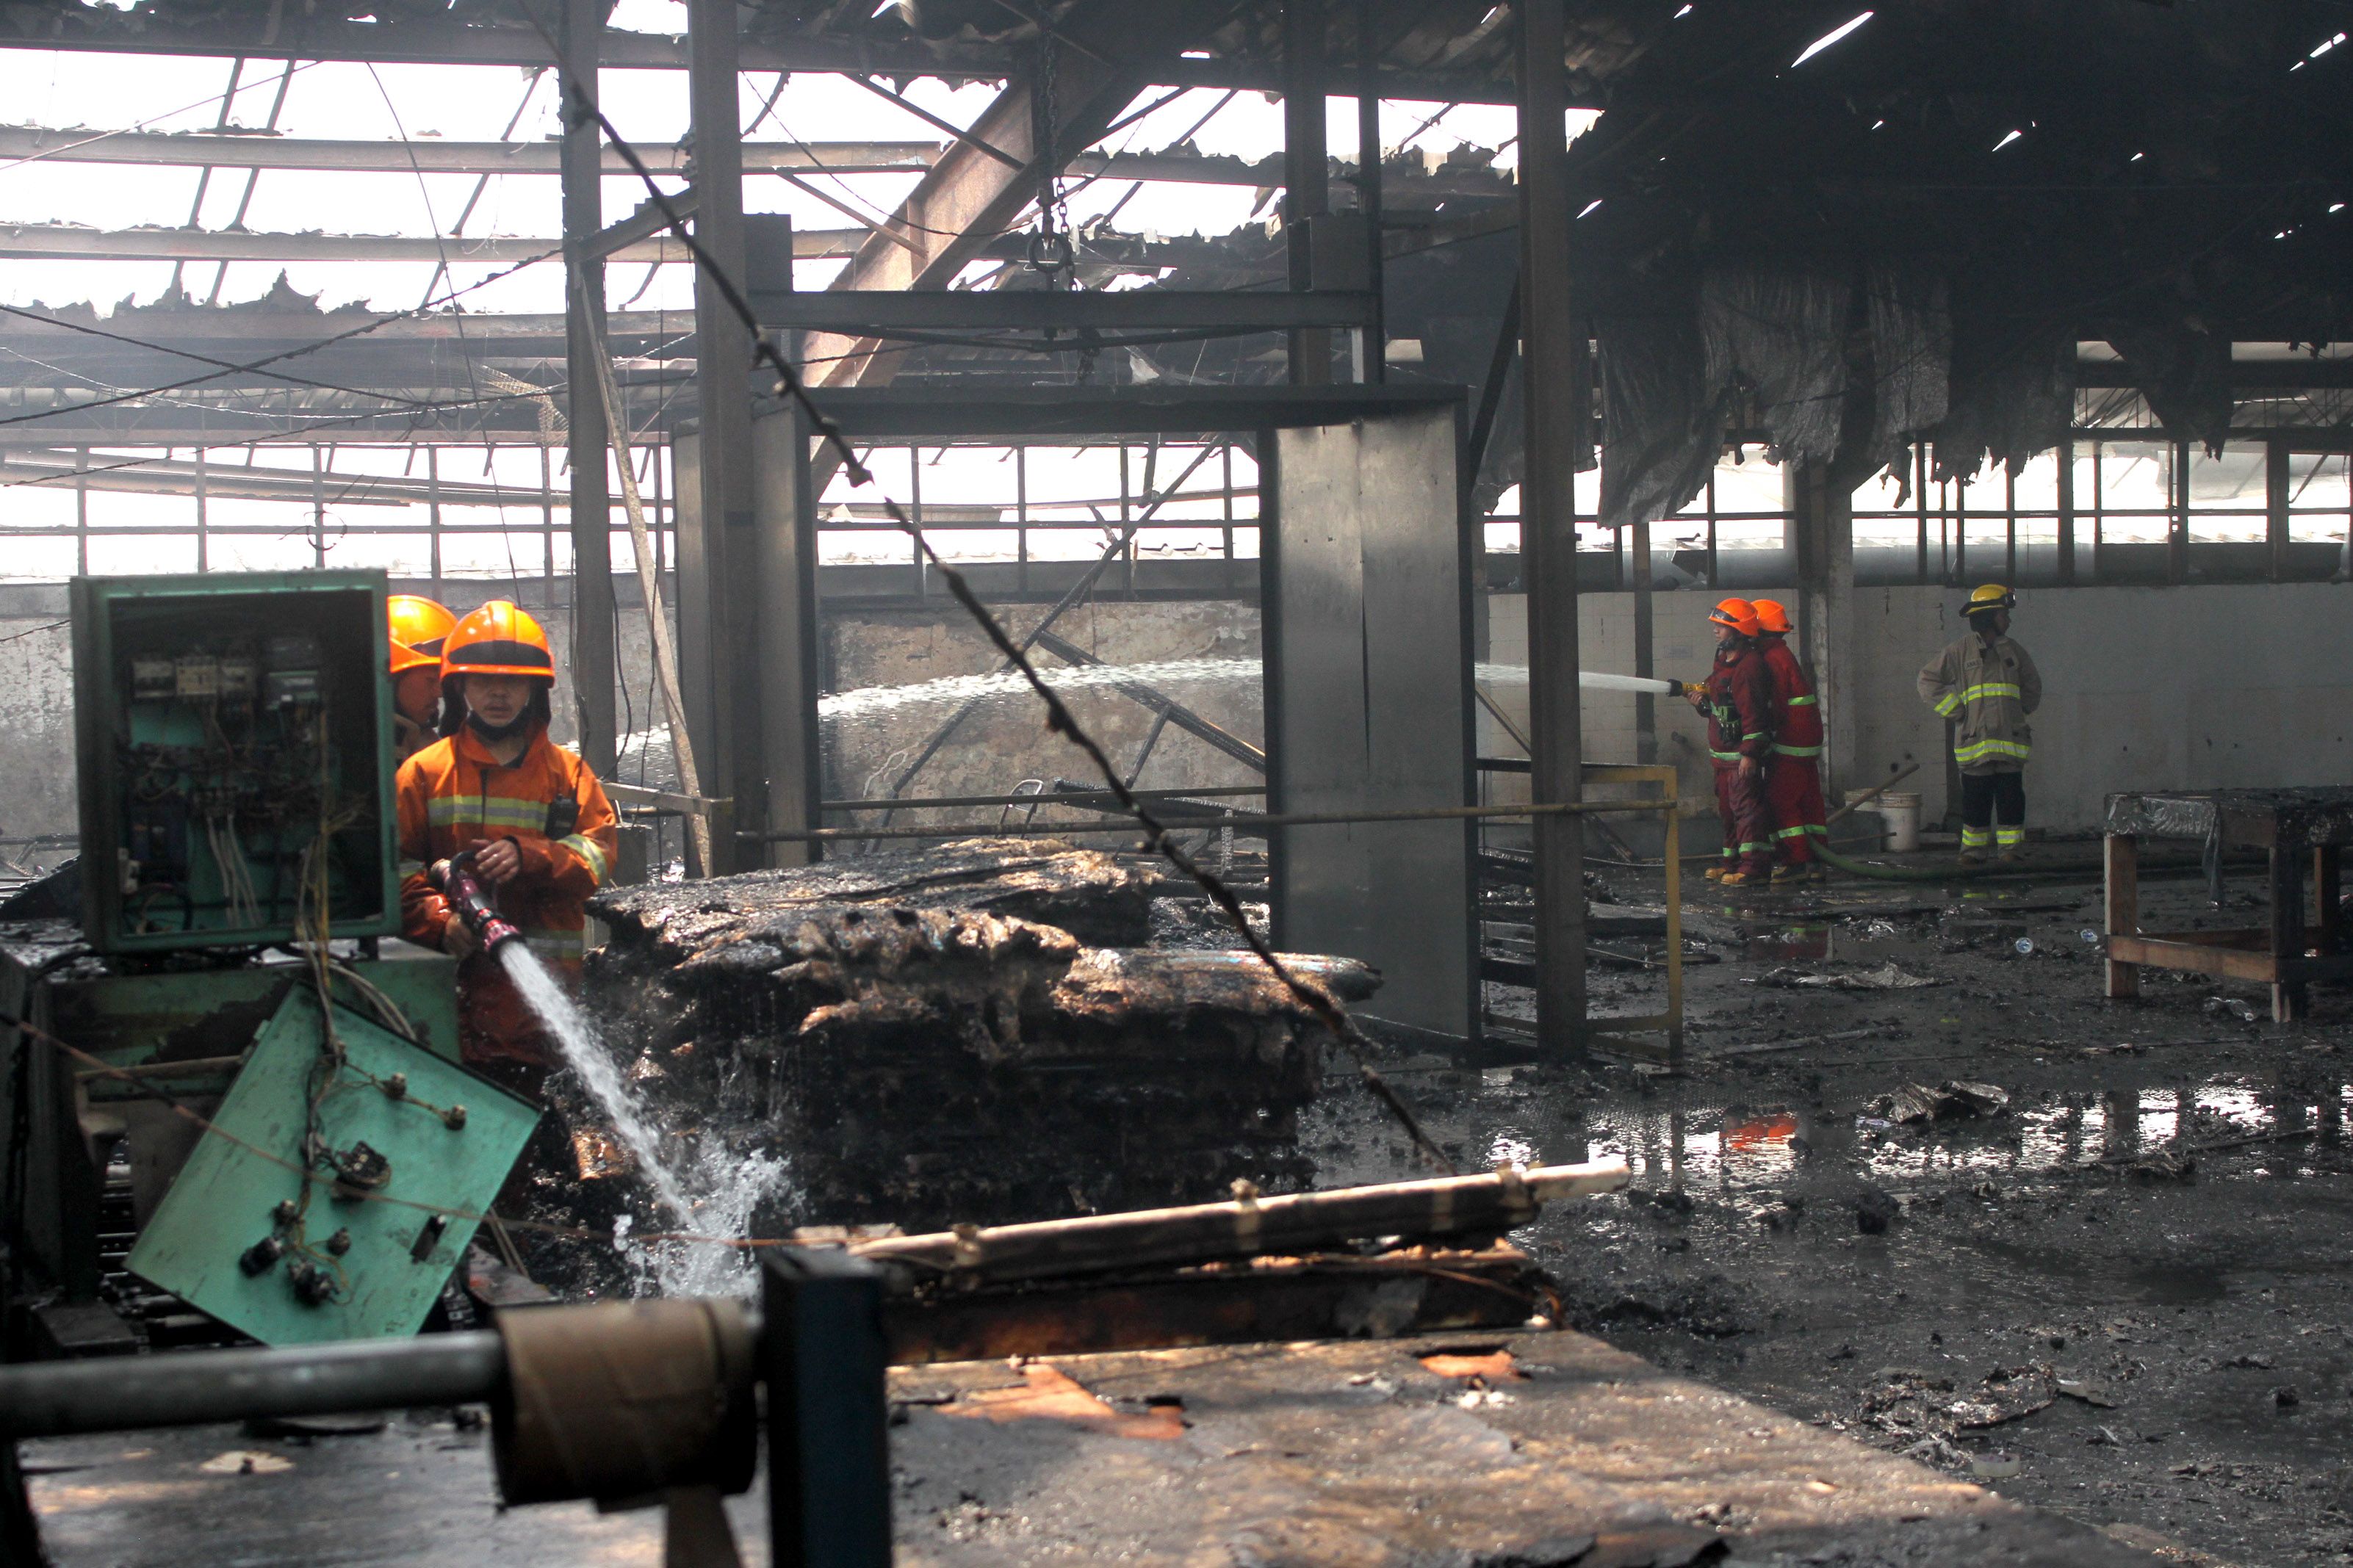 Sebuah bangunan disalahsatu pabrik tekstil terbakar di Jln. Jend. Sudirman, Kel. Cijerah, Kec. Bandung Kulon, Kota Bandung, Senin, 4 Oktober 2021./Darma Legi/Galamedia